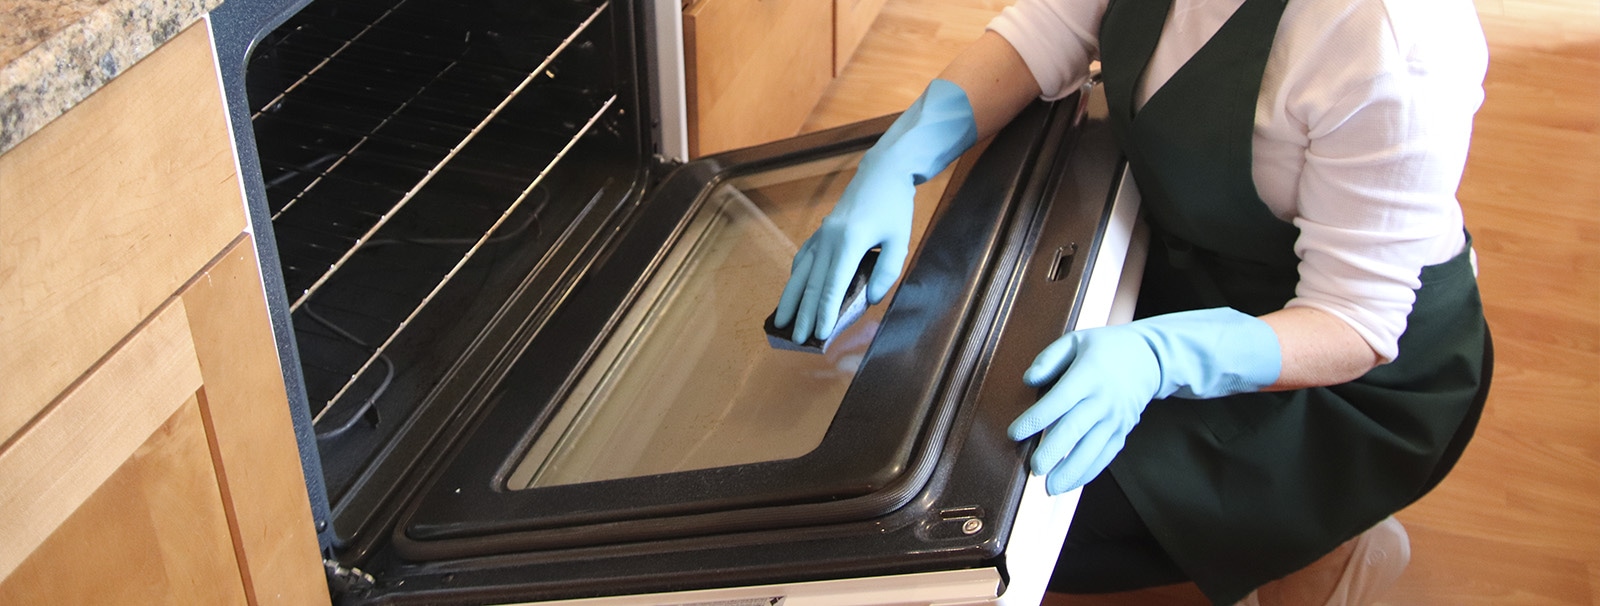 Tip para limpiar la parrilla de la estufa